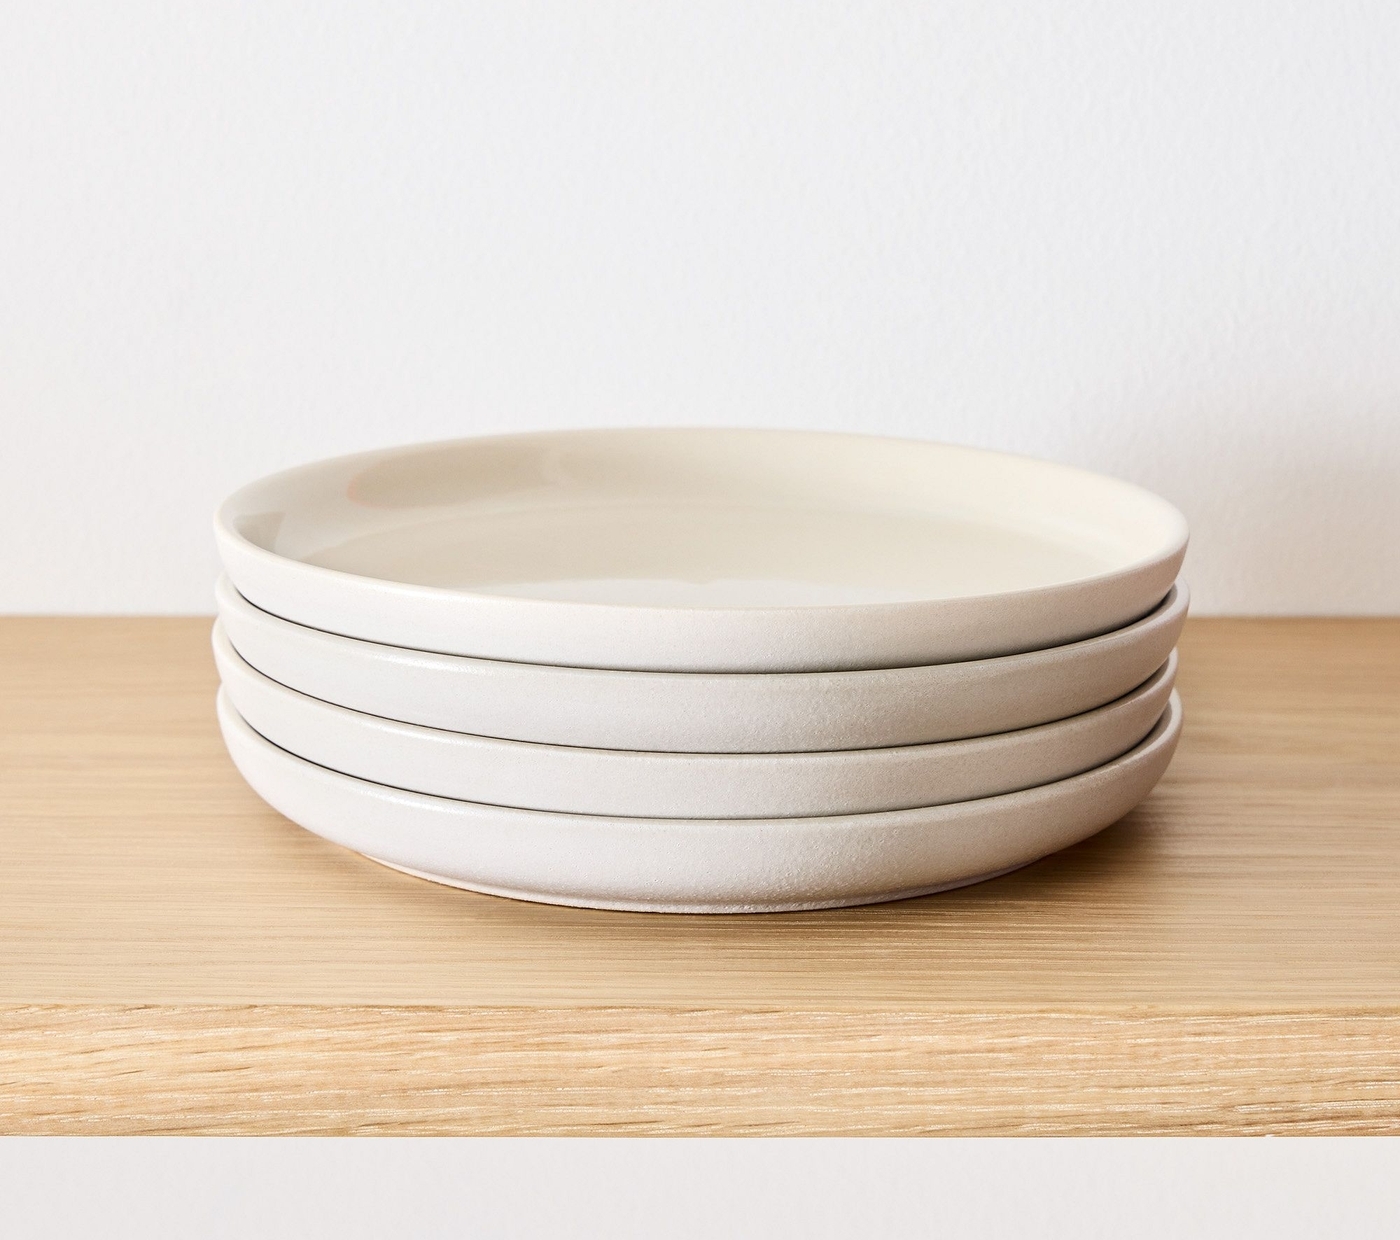 Kaloh Stoneware Salad Plates, White, Set of 4